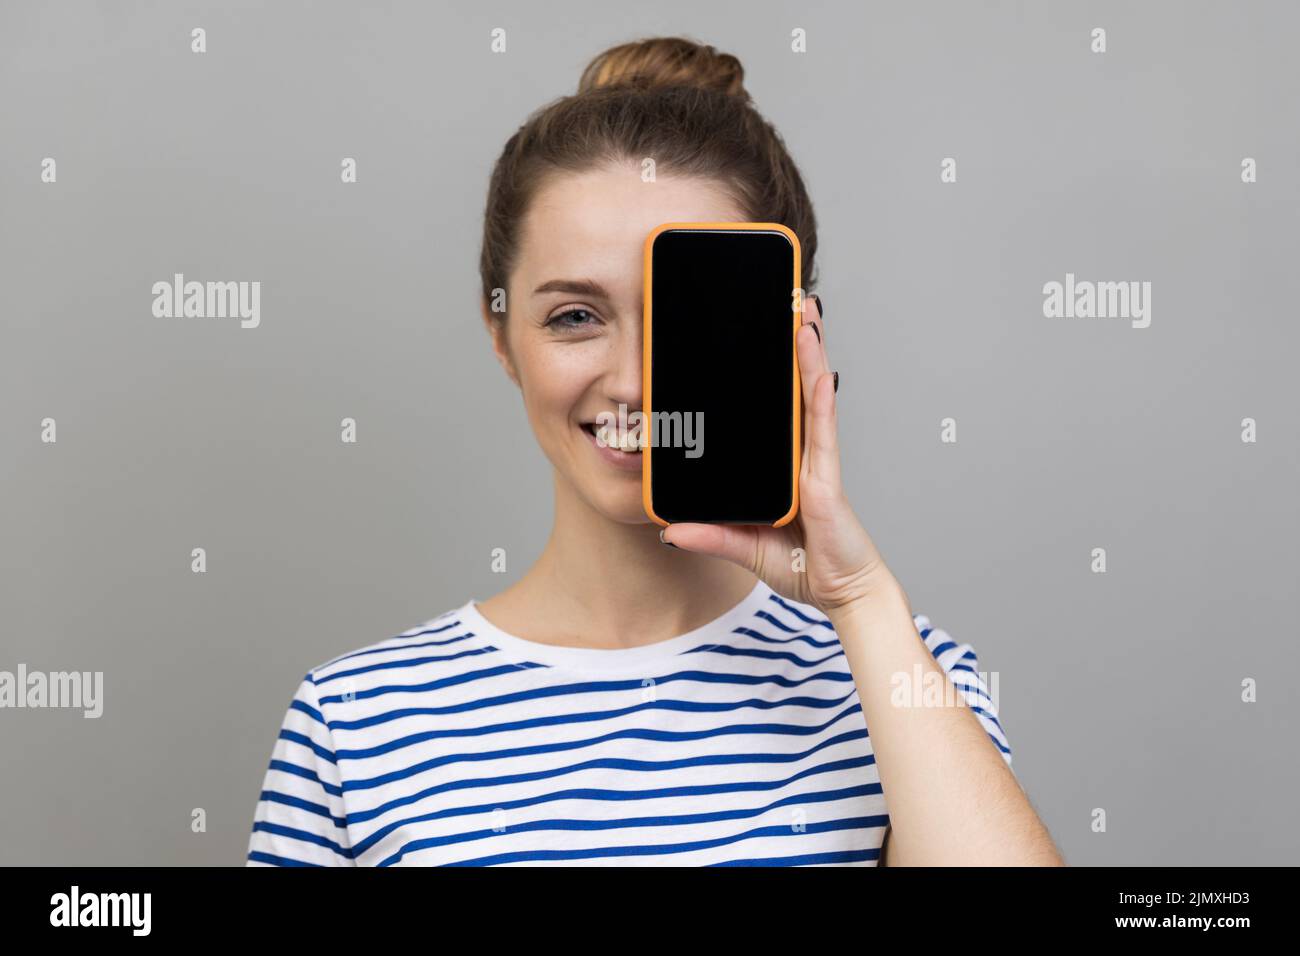 Retrato de atractiva mujer satisfecha con una camiseta a rayas que cubre el ojo con teléfono móvil con pantalla vacía para publicidad. Estudio de interior grabado aislado sobre fondo gris. Foto de stock